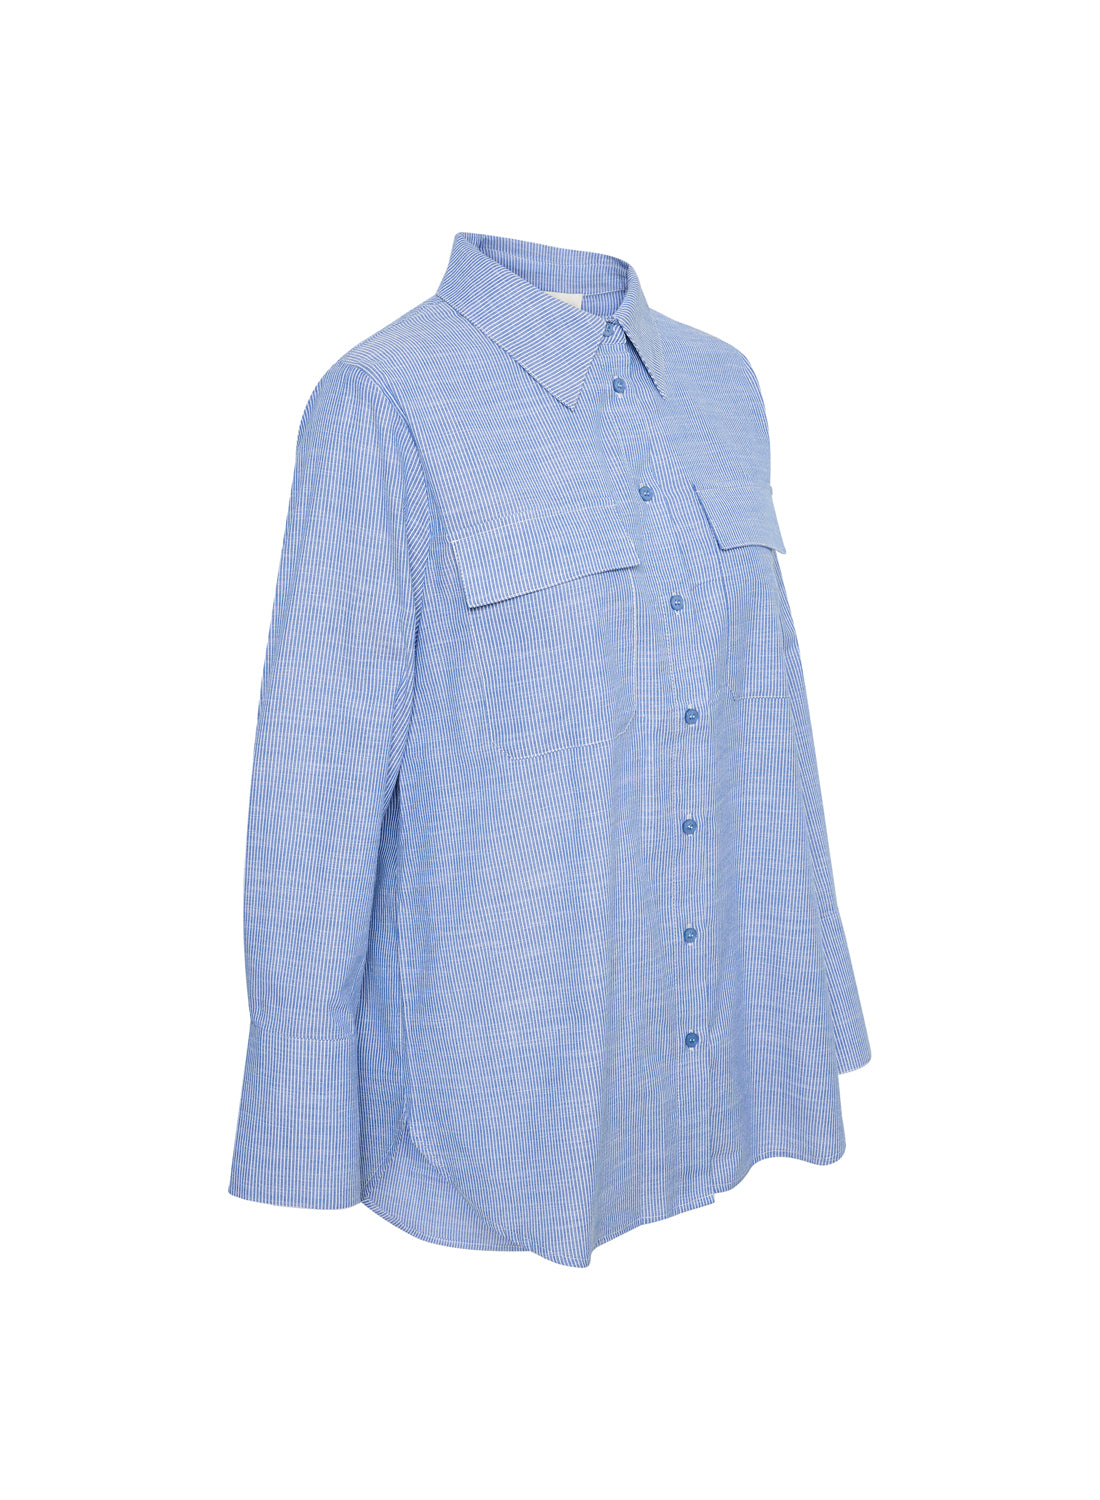 My Essential Wardrobe SkyeMW Shirt Delft Blue